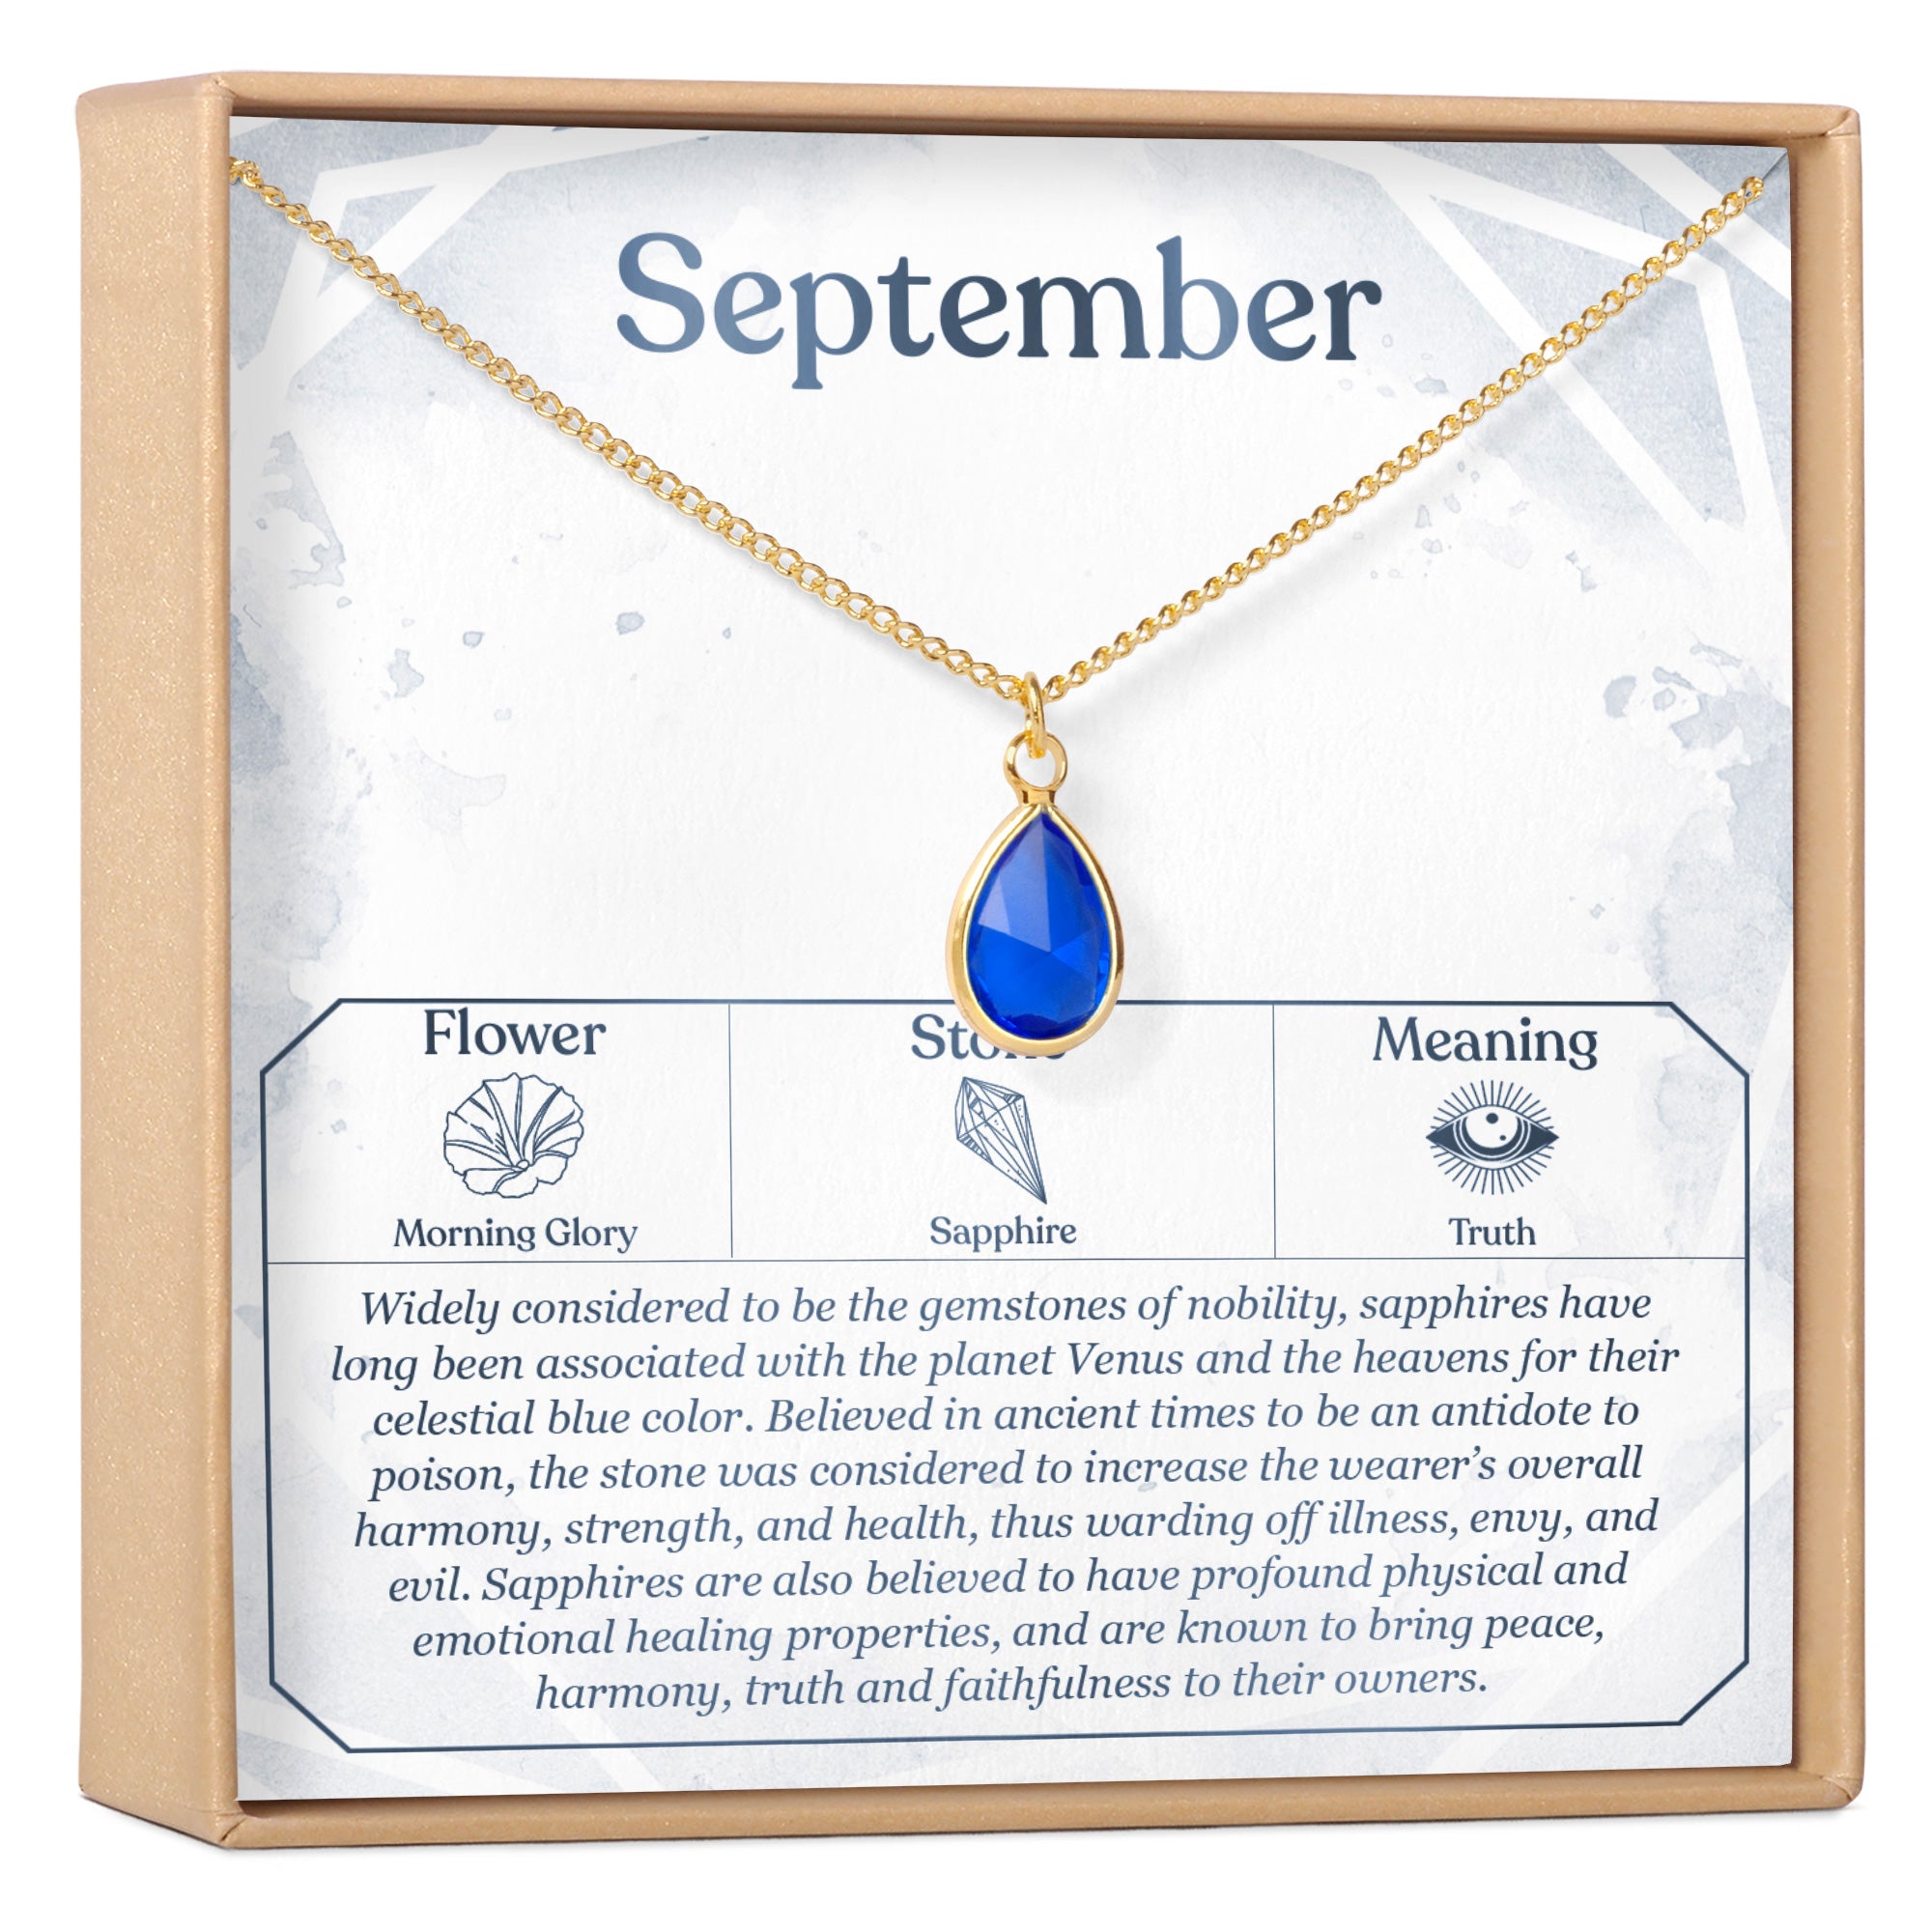 September 8th Necklace Present for Birthday, Celebration, Gift for Her,  Virgo - Dear Ava